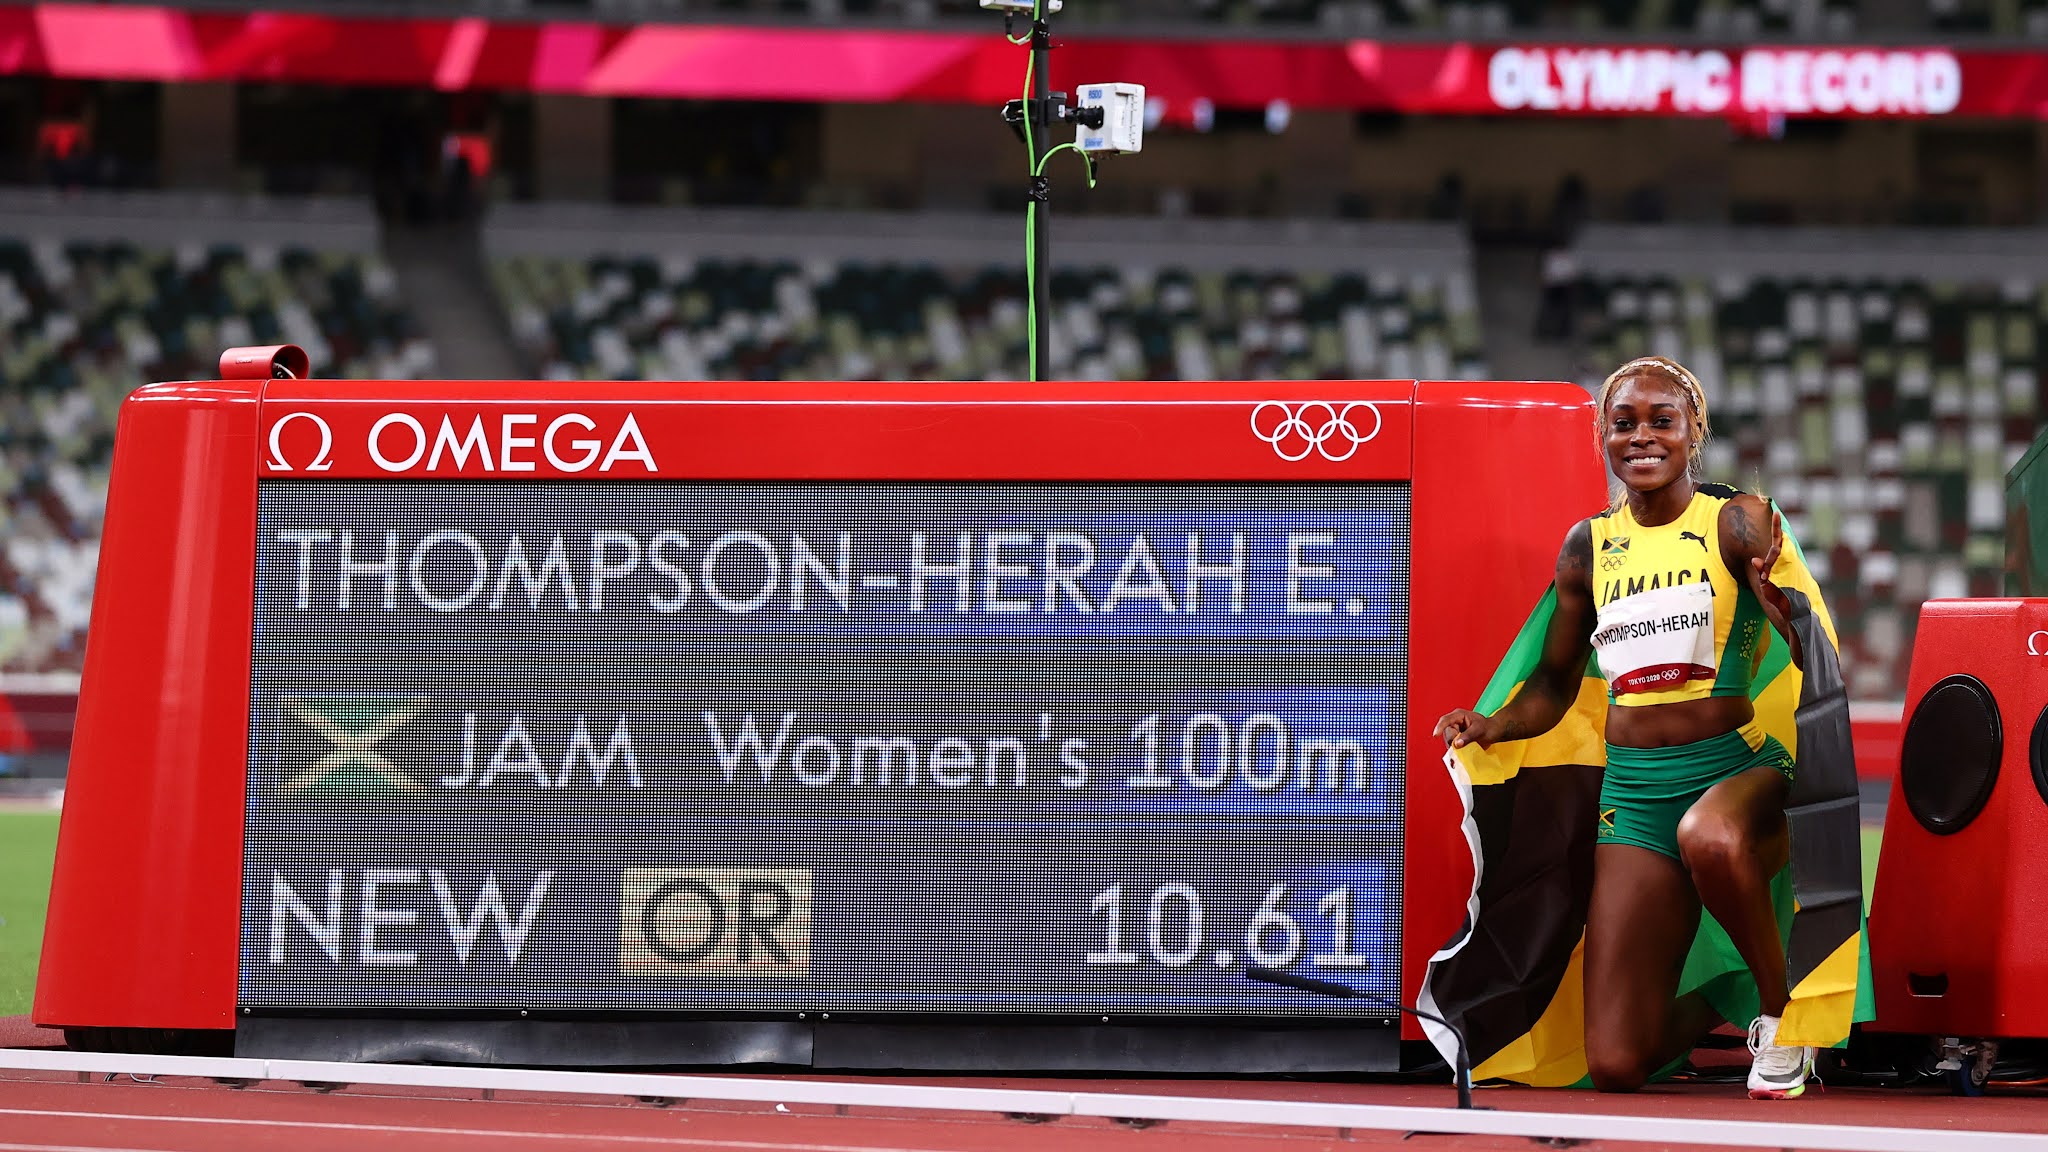 Histórico: Elaine Thompson ganó el oro en los 100 metros de los Juegos Olímpicos de Tokio y rompió el récord luego de 33 años